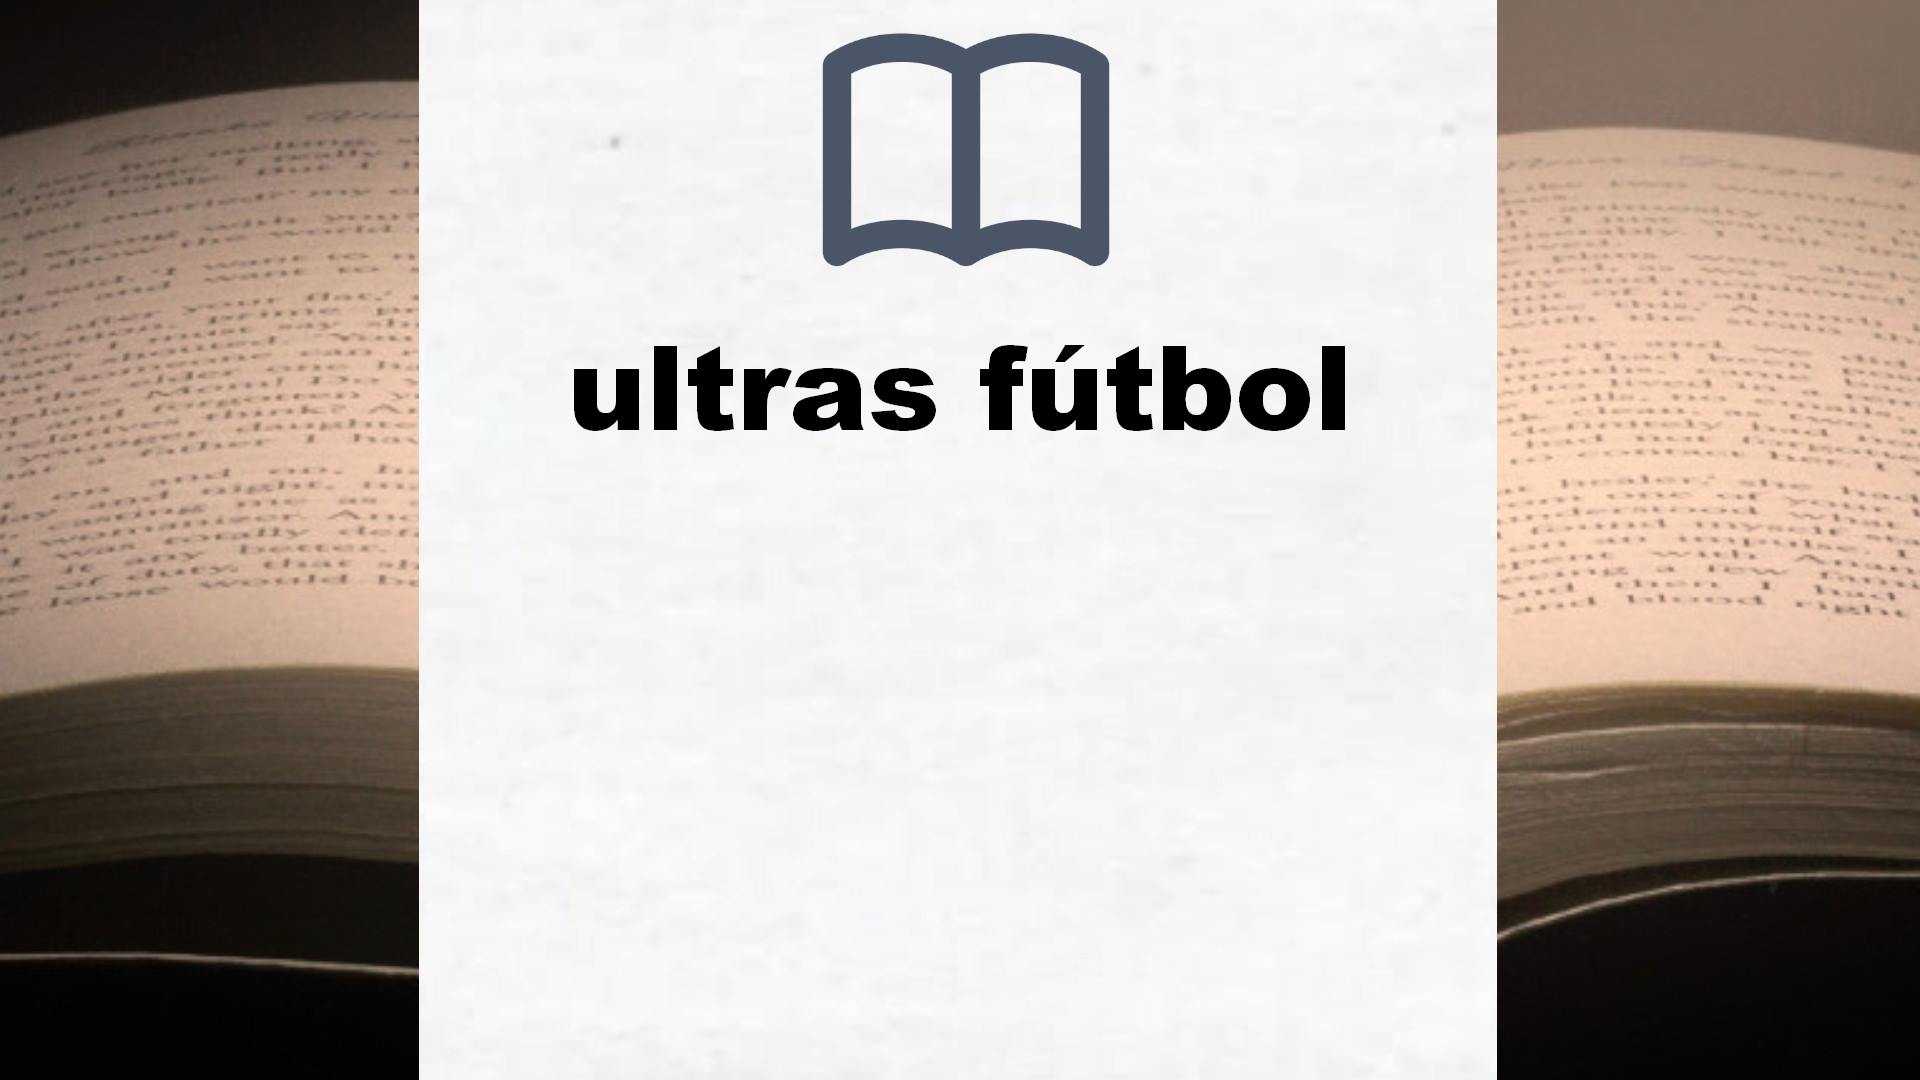 Libros sobre ultras fútbol